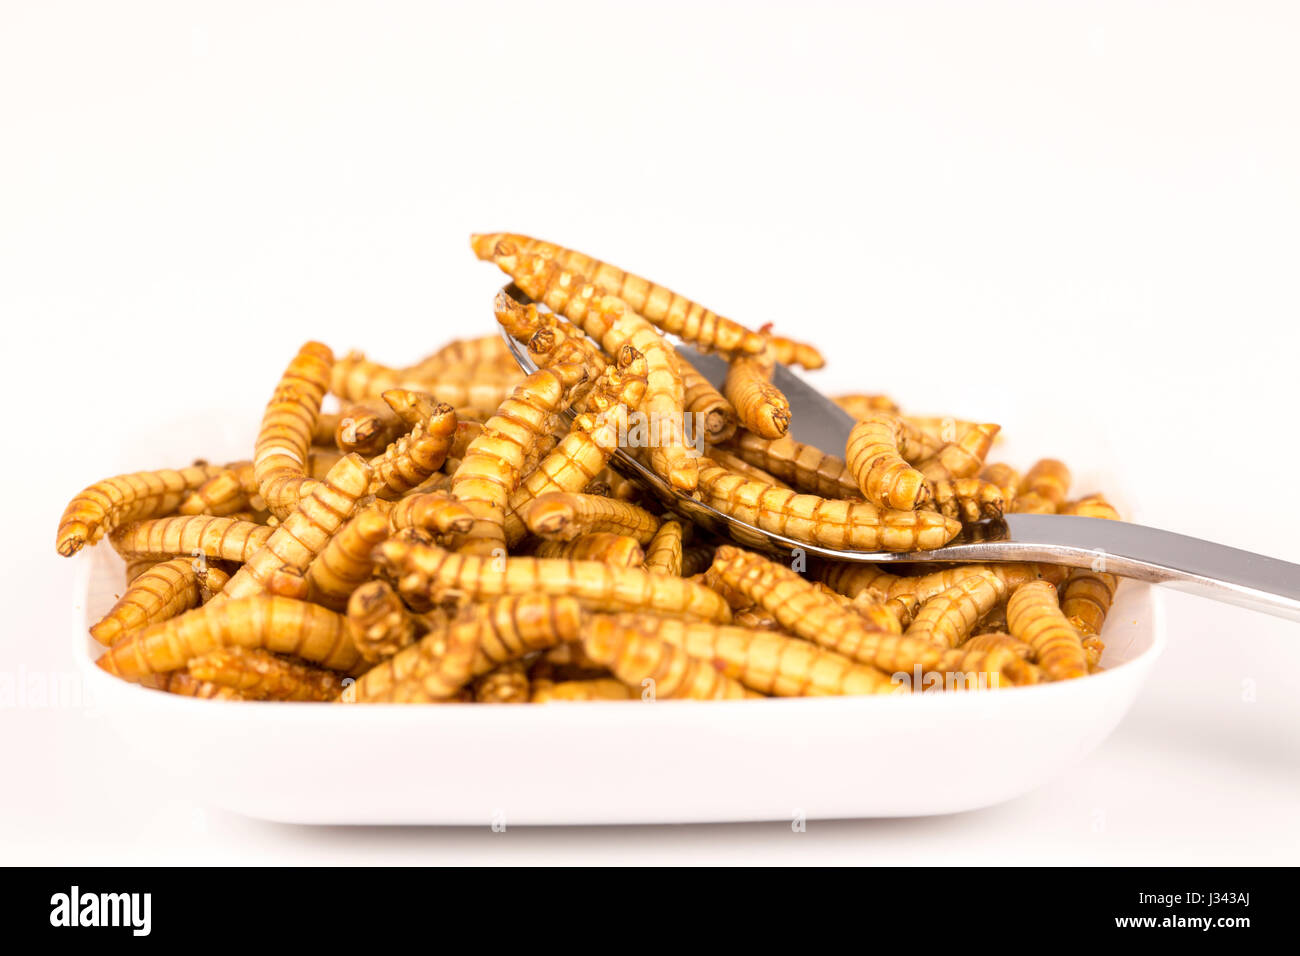 Plato de insectos fritos con cuchara. molitors, futuros de alimentos ricos en proteínas Foto de stock